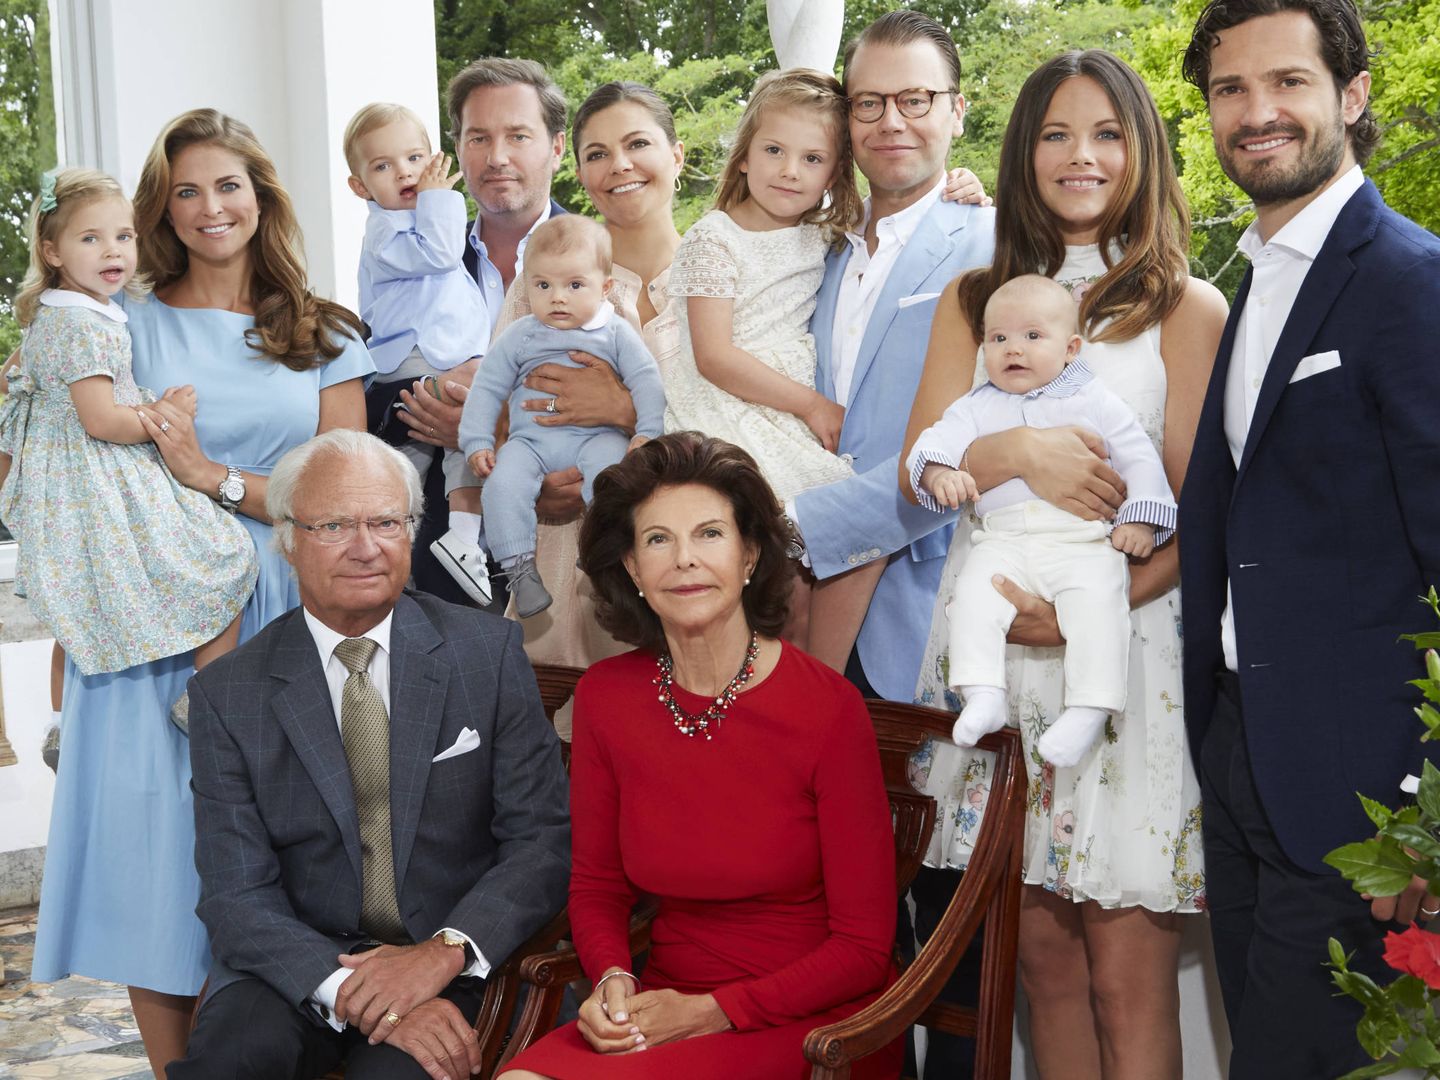  La familia real sueca al completo.